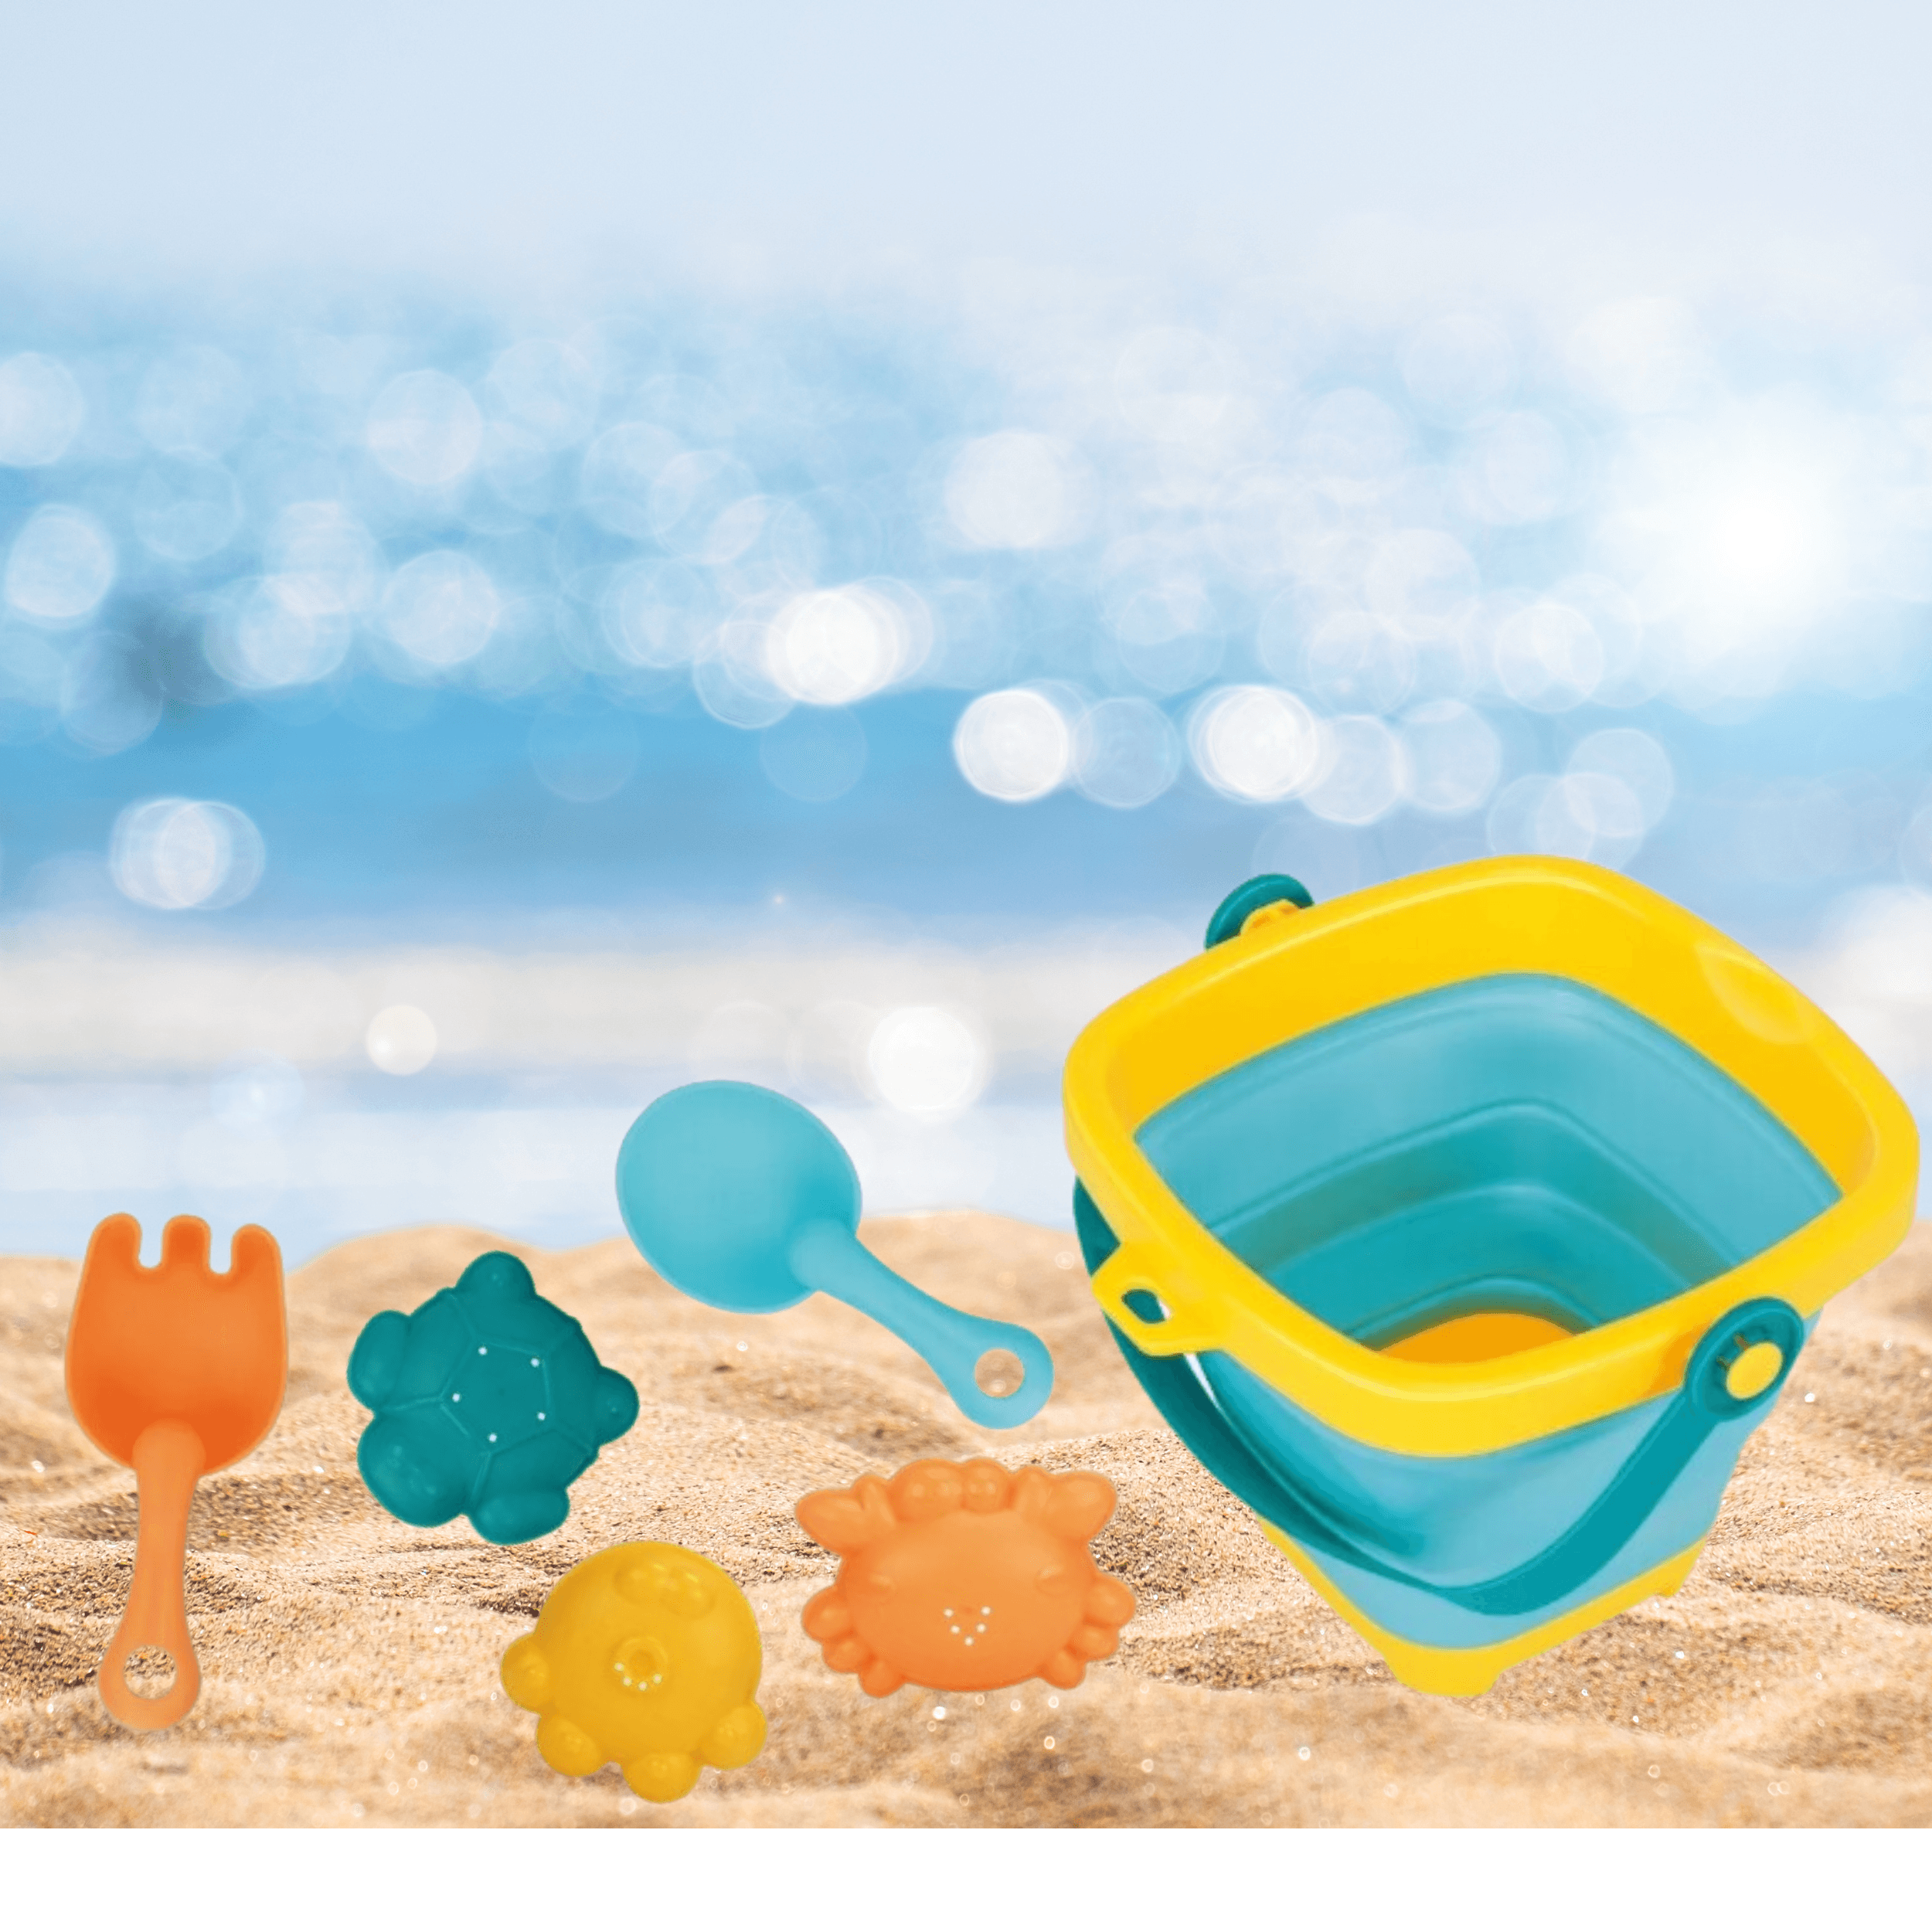 Sandbox / water toy set - 5 pcs.